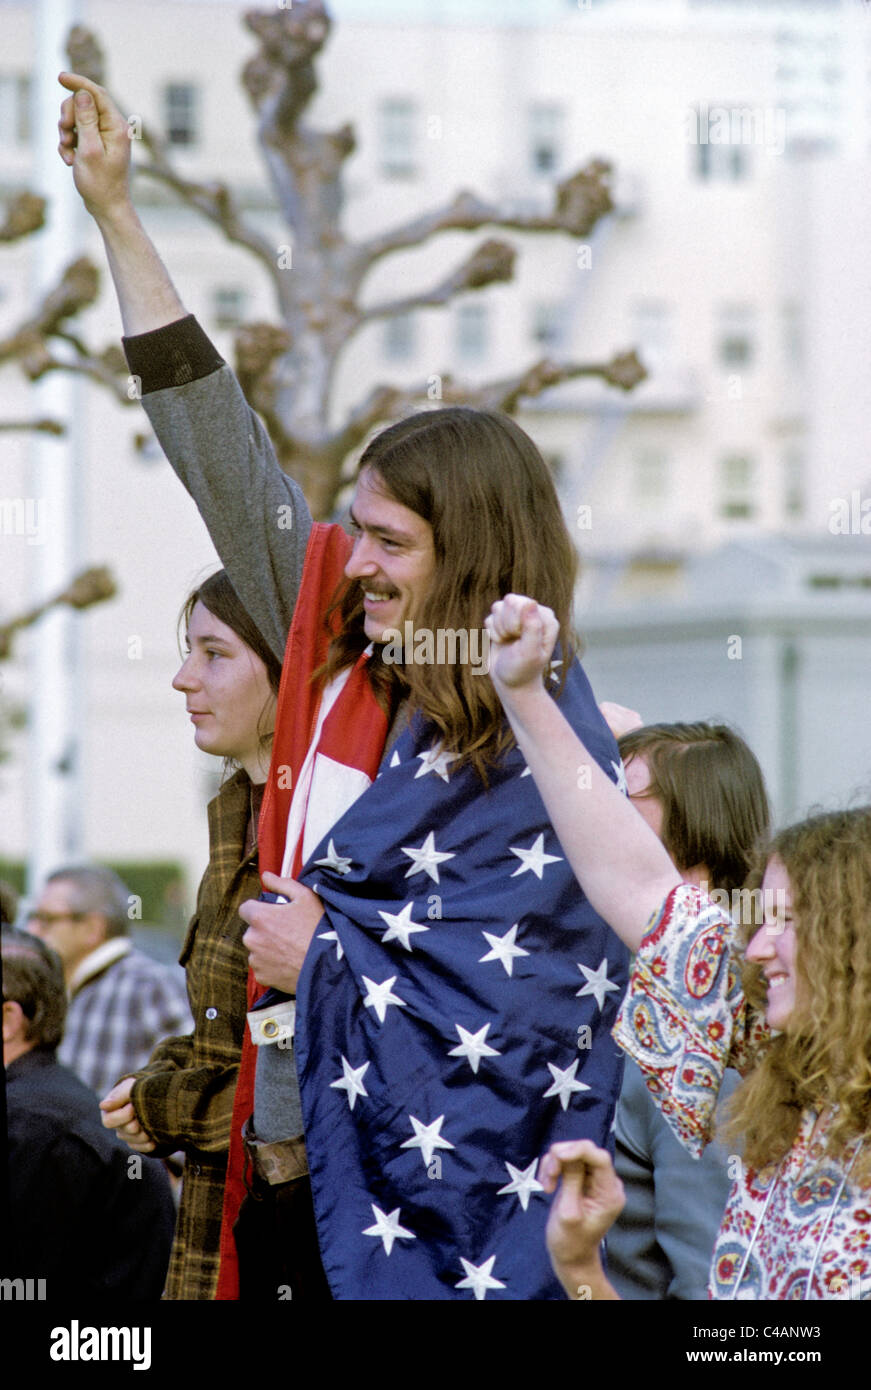 Anti Vietnam manifestanti dimostrare a ottenere al di fuori del Vietnam rally contro la guerra al San Francisco civic center circa 1969 Foto Stock